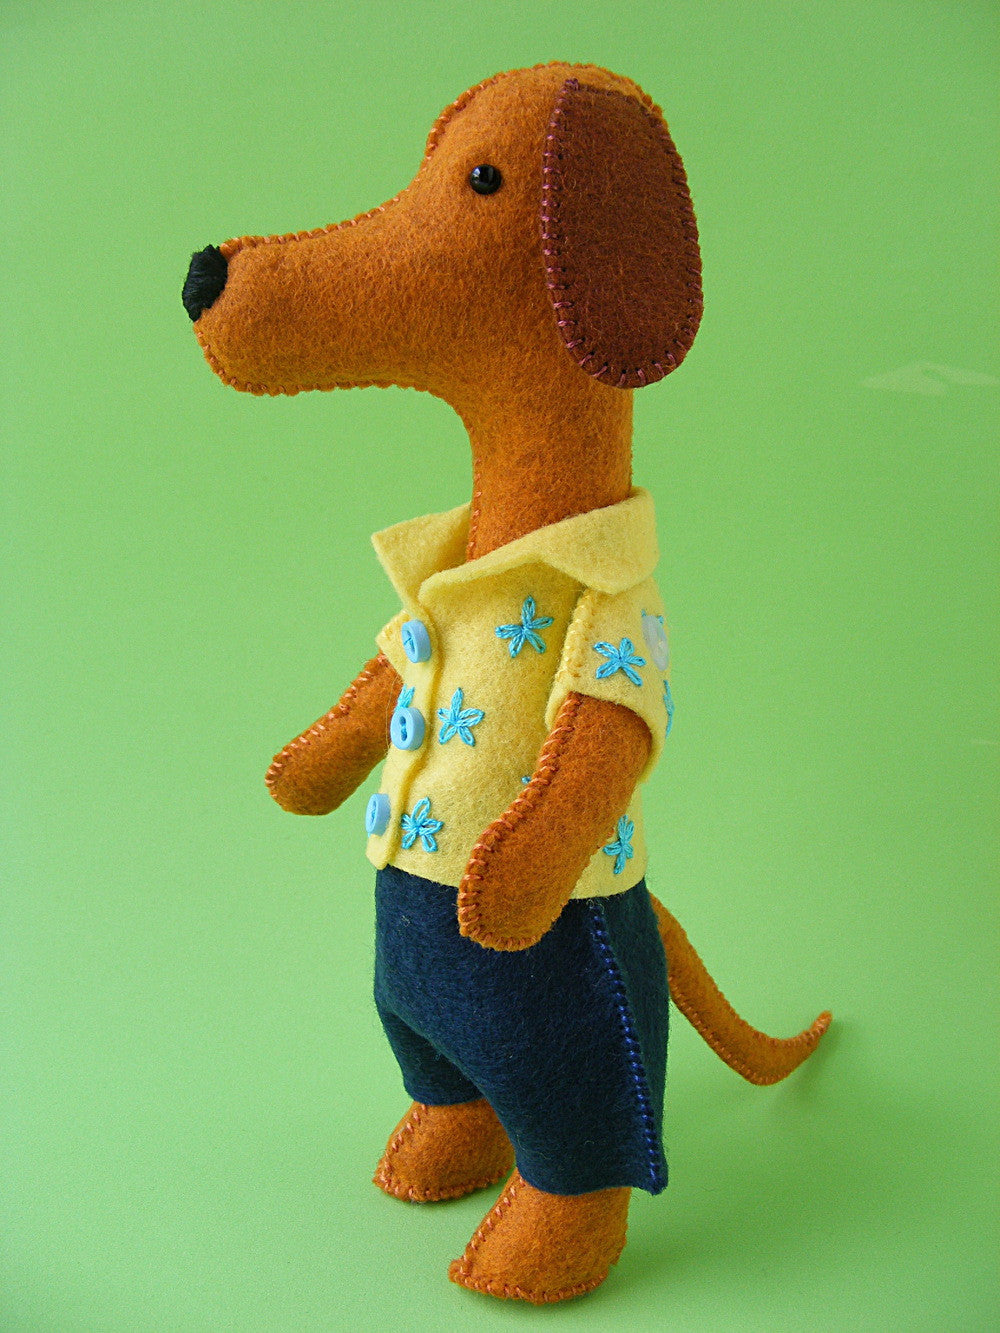 Herbie Hound - felt dog softie pattern